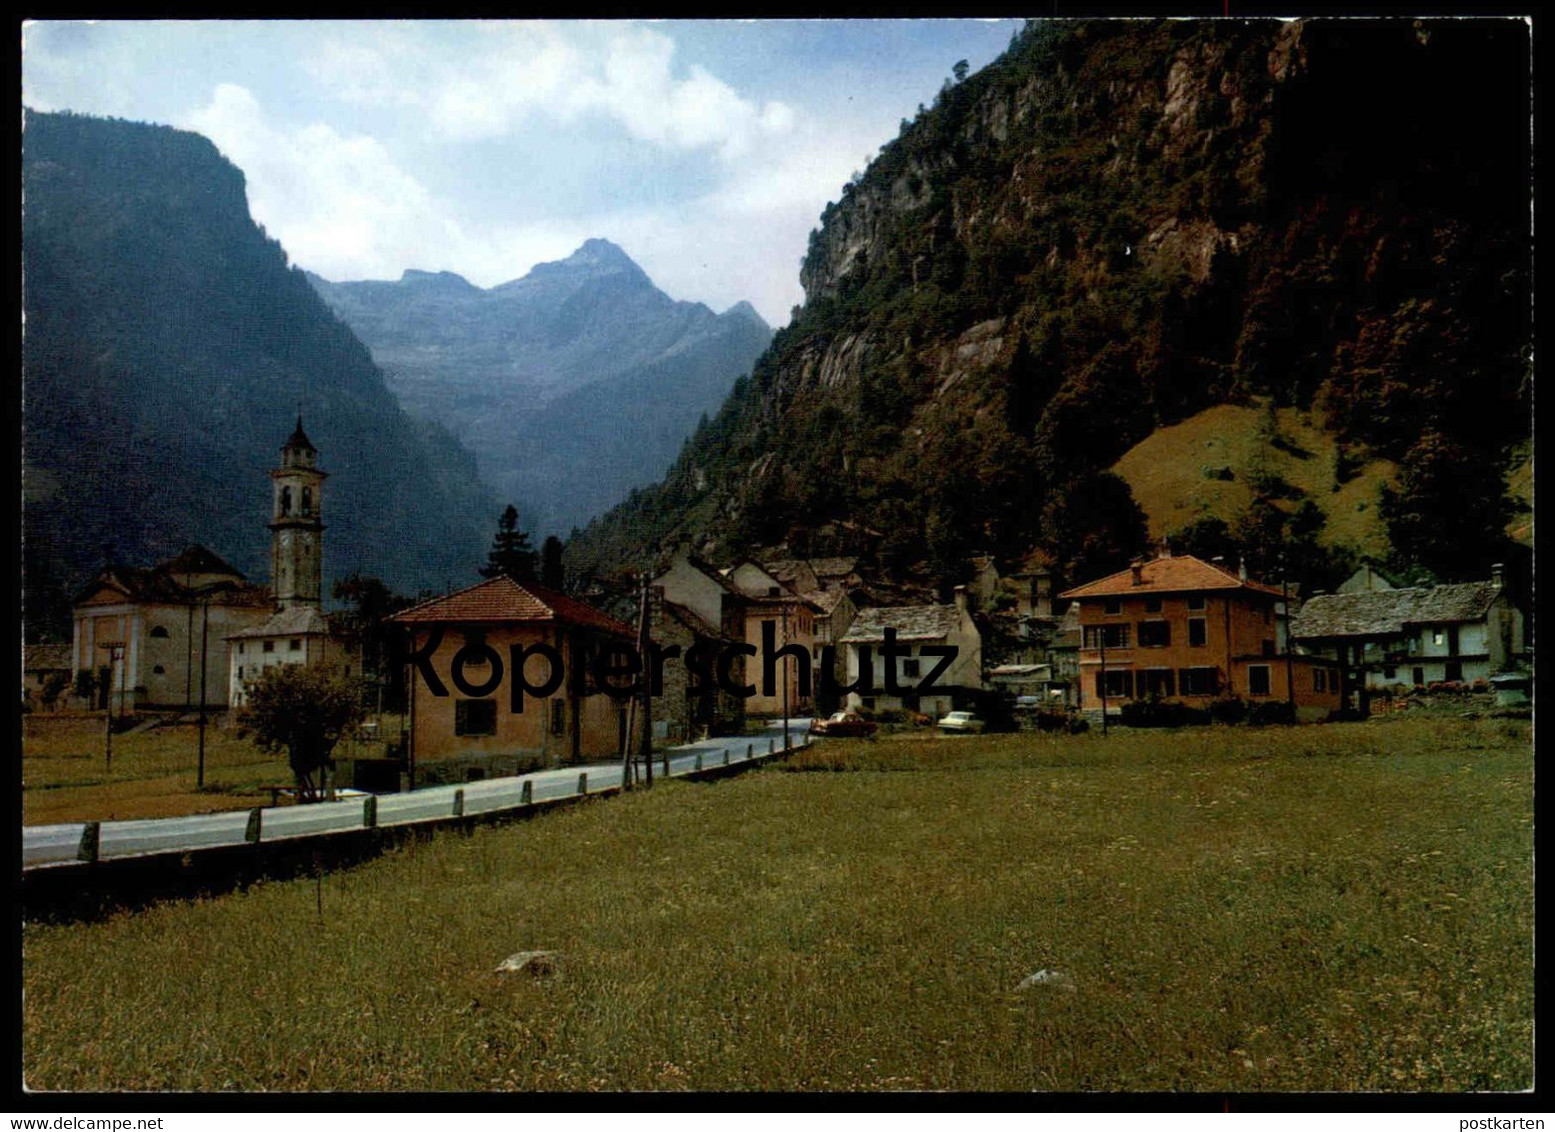 ÄLTERE POSTKARTE SONOGNO VALLE VERZASCA TICINO Tessin Suisse Switzerland Schweiz Helvetia Ansichtskarte AK Postcard Cpa - Sonogno